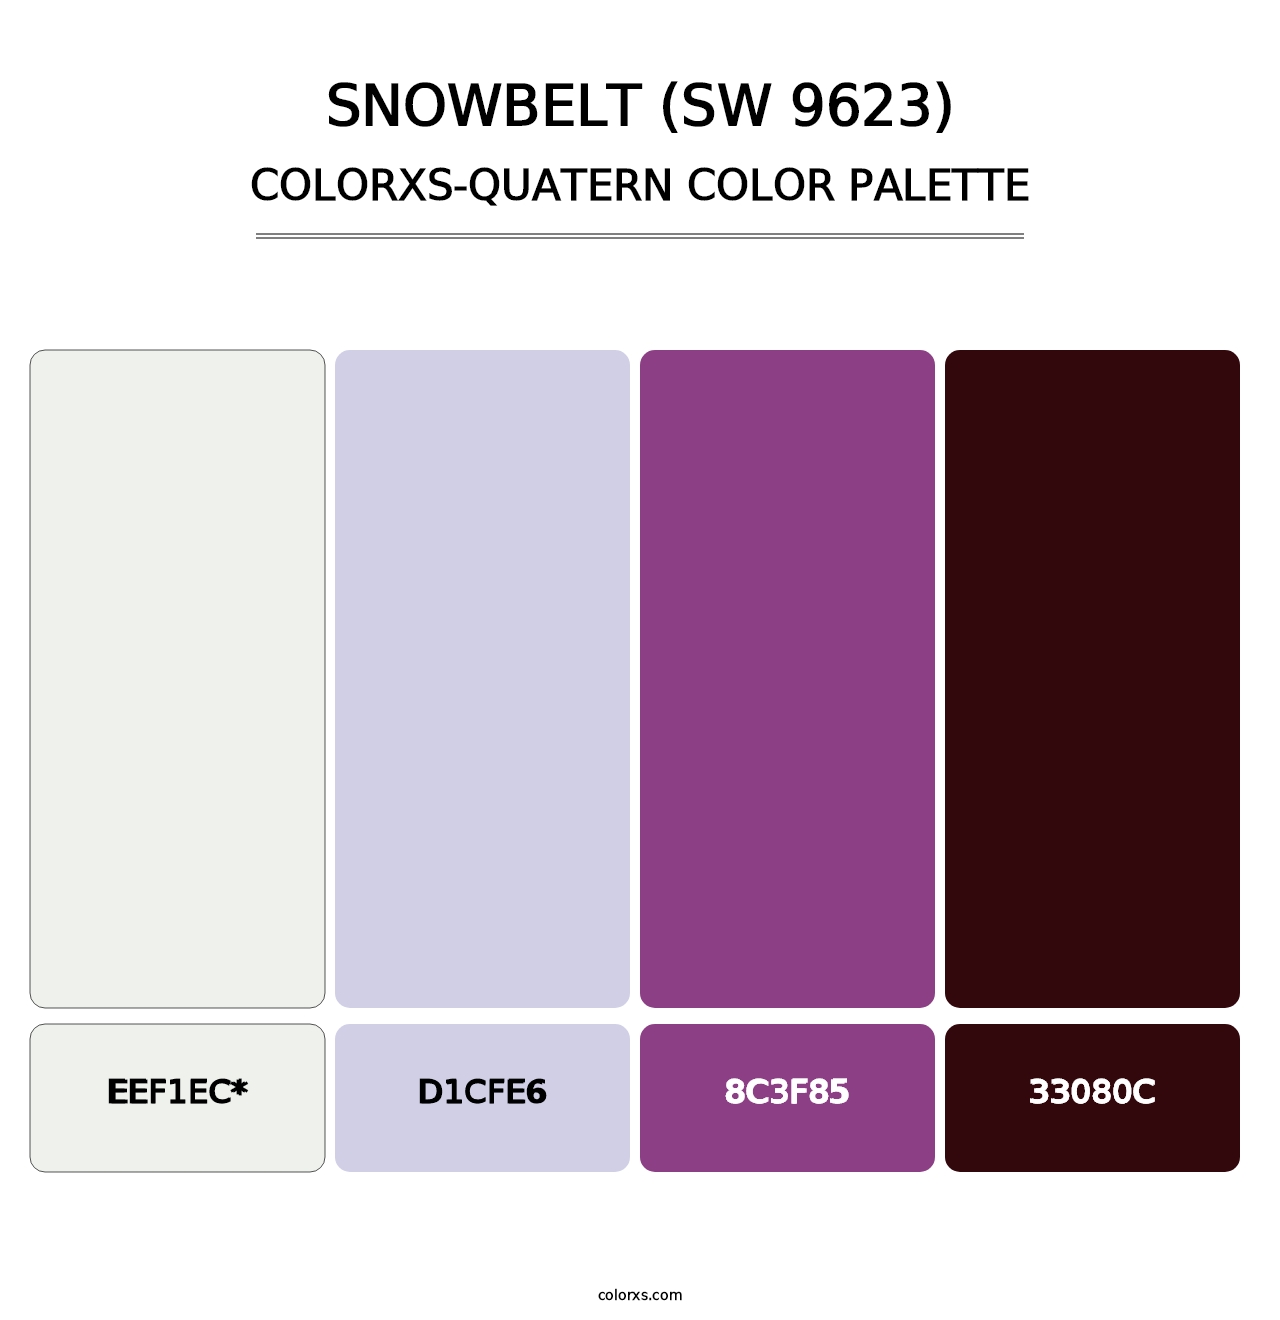 Snowbelt (SW 9623) - Colorxs Quatern Palette